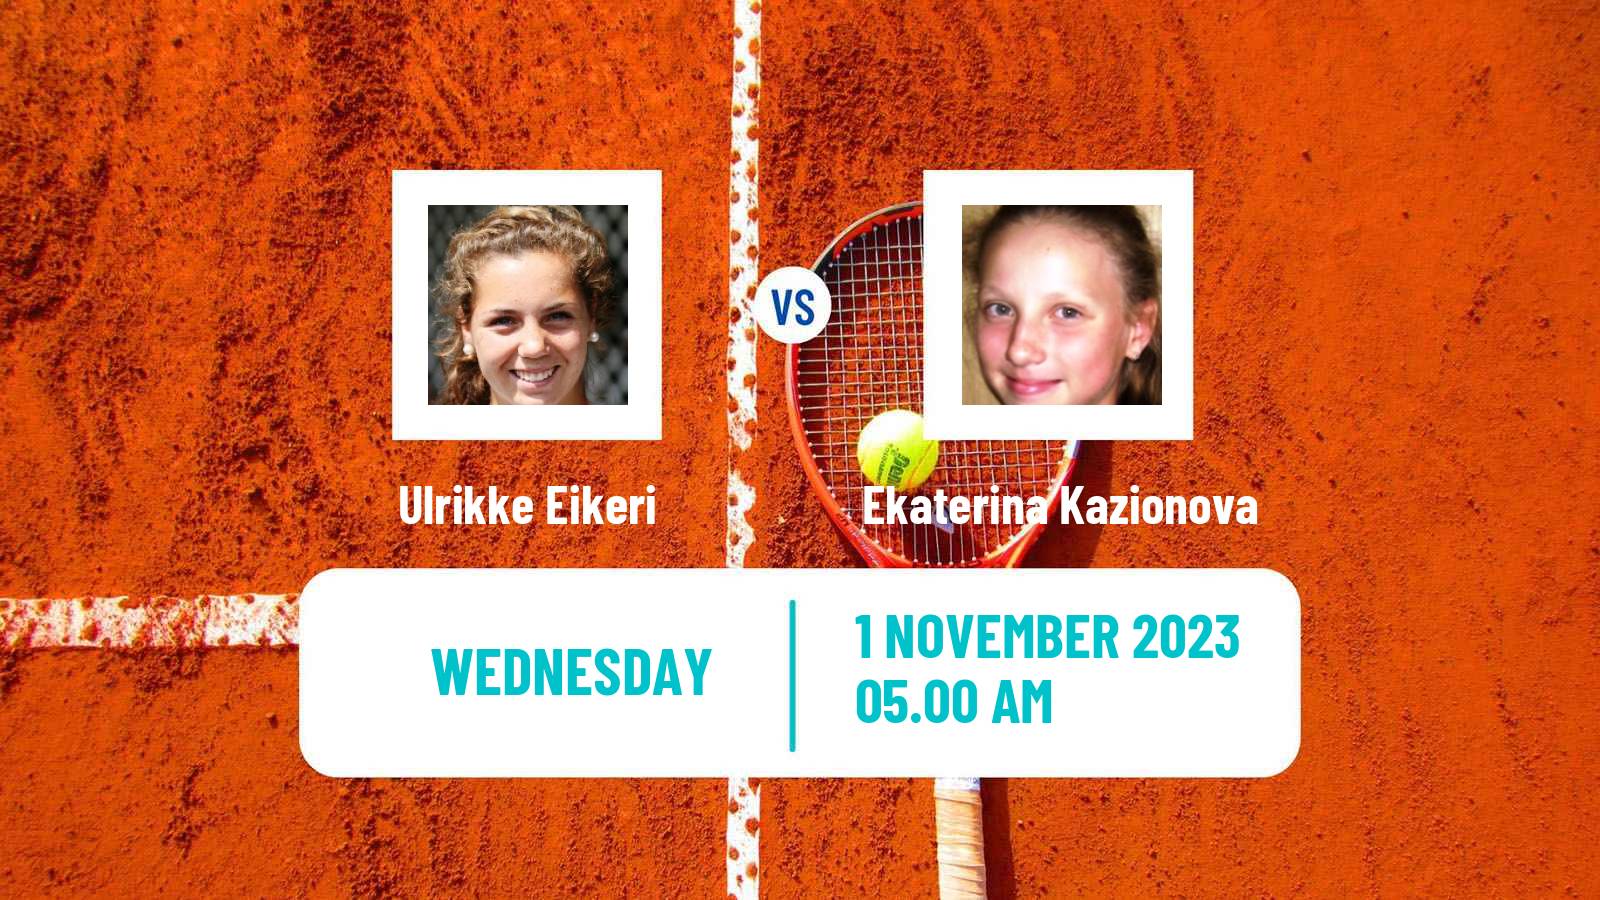 Tennis ITF W25 Sunderland Women Ulrikke Eikeri - Ekaterina Kazionova